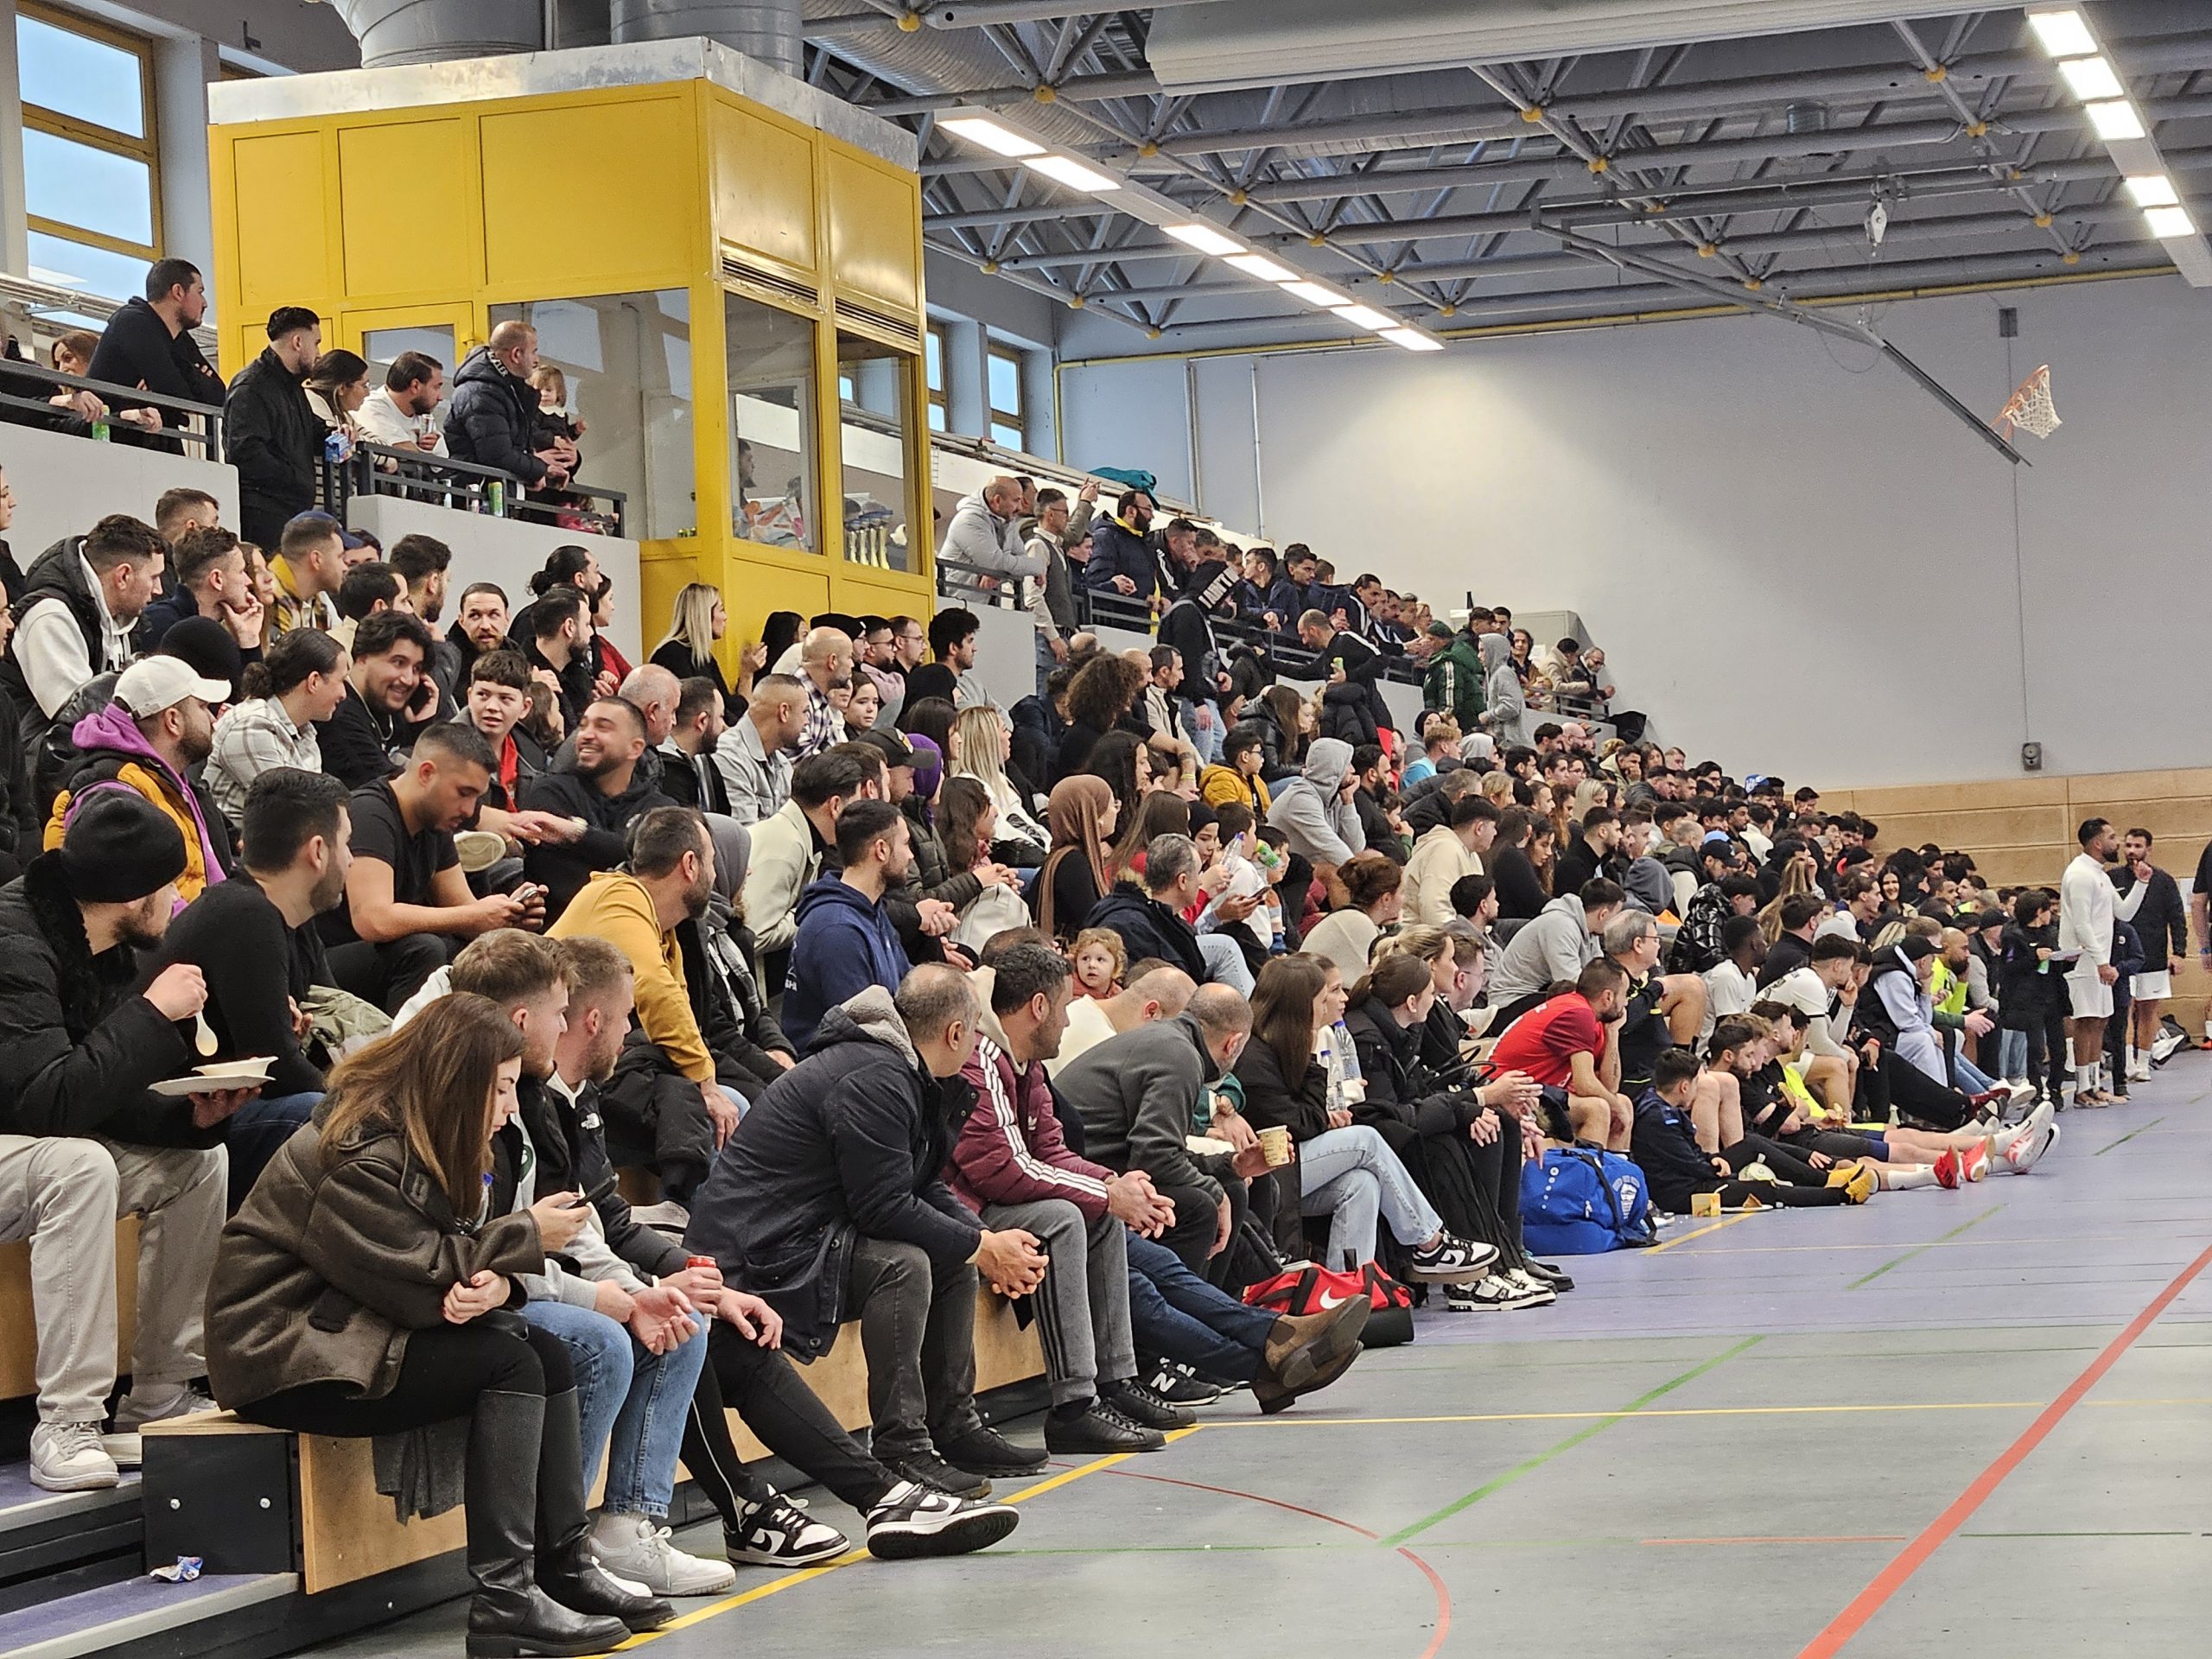 Read more about the article Futsalturnier beim Deutsch-Türkischen-Kulturverein in Alsdorf